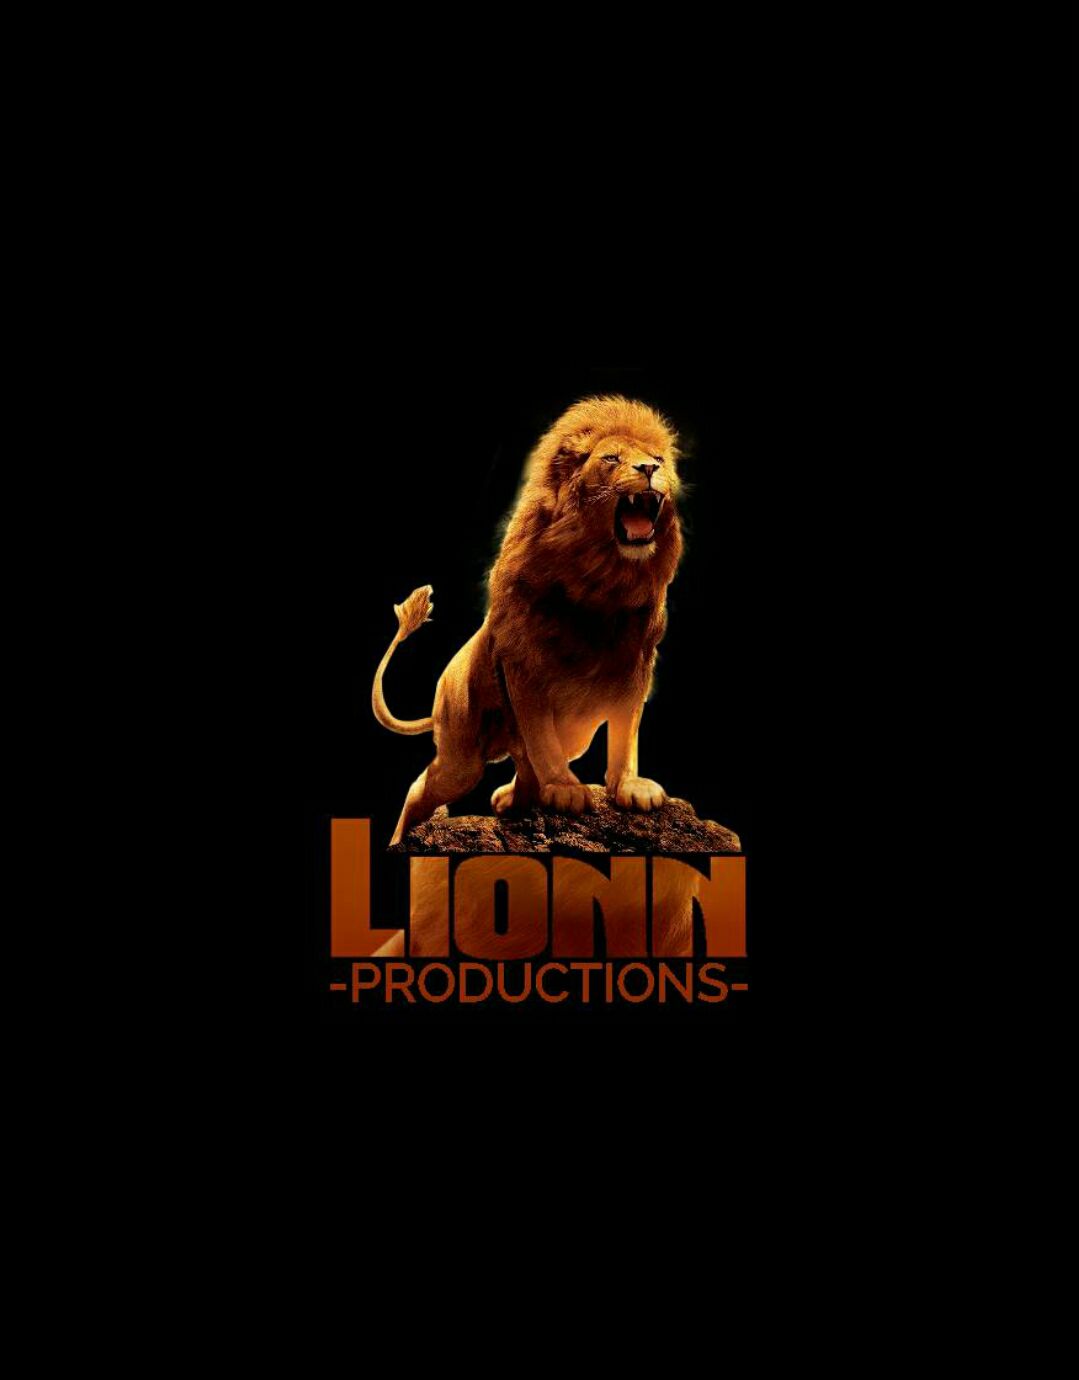 Lionn Productions